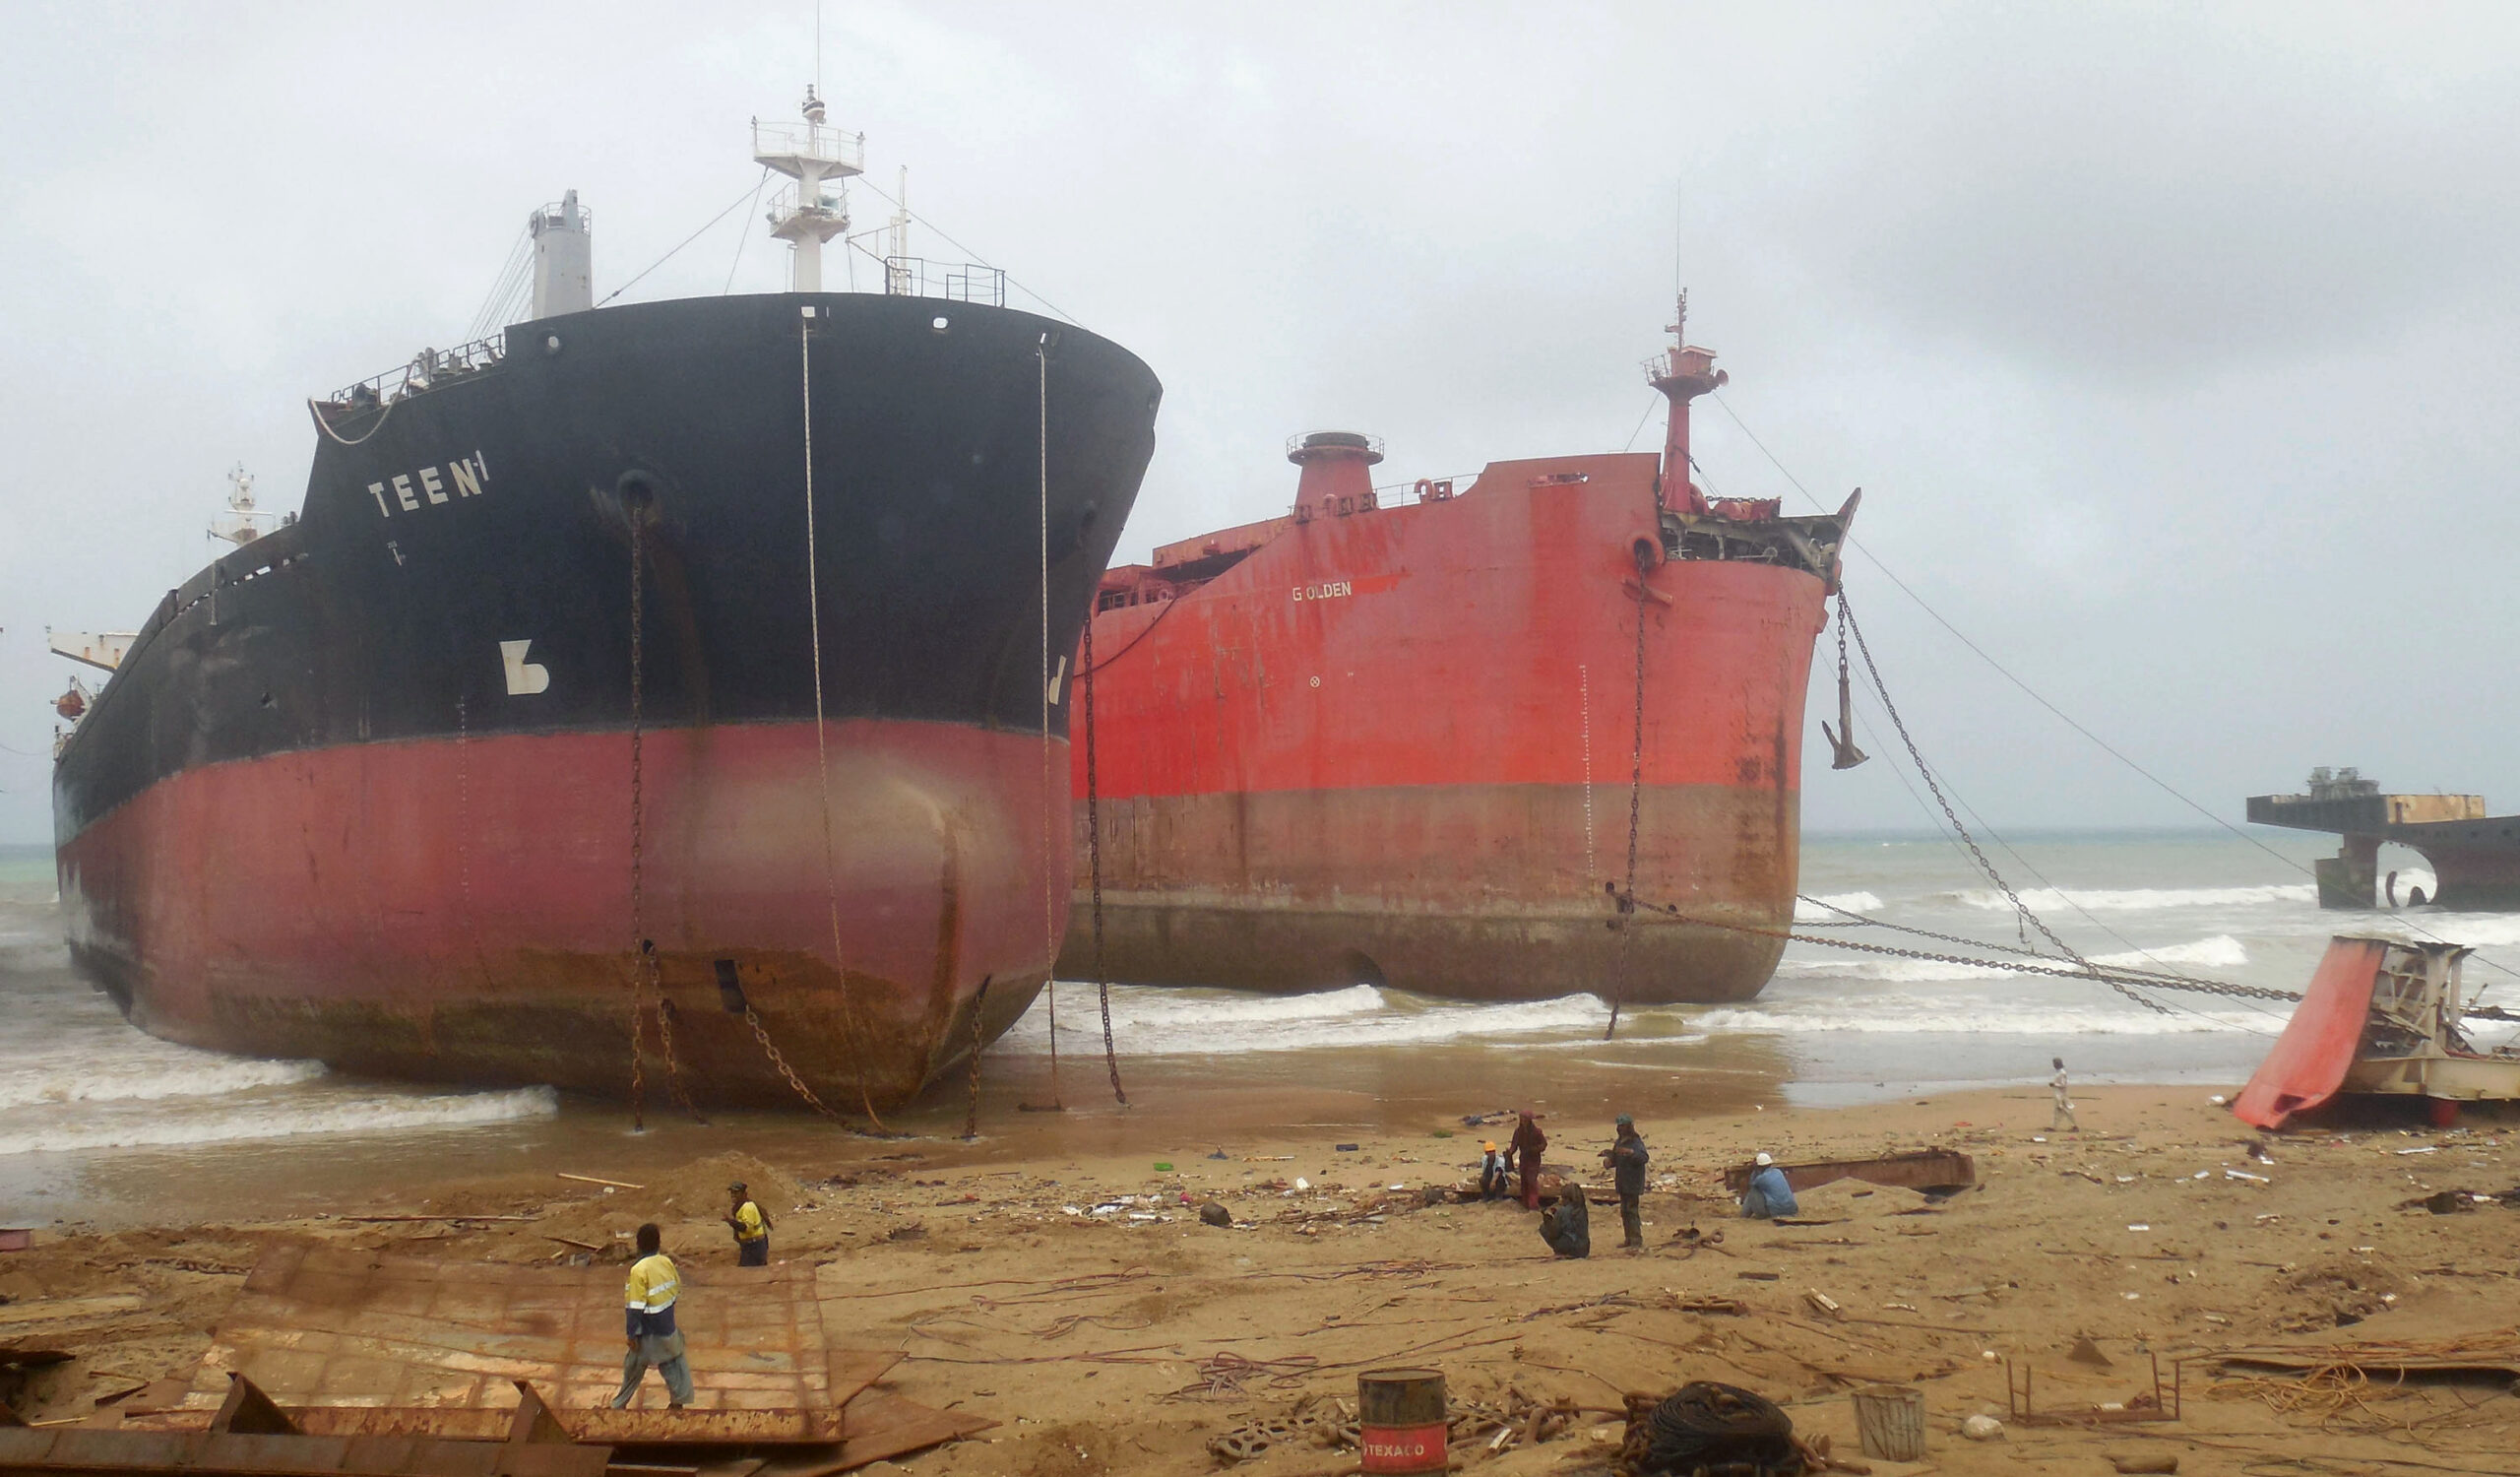 Große Schiffe werden in Pakistan auf Grund gesetzt, um sie abwracken zu können. Wegen eines ähnlichen Vorgehens wird nun gegen eine Hamburger Reederei ermittelt (Symbolbild)